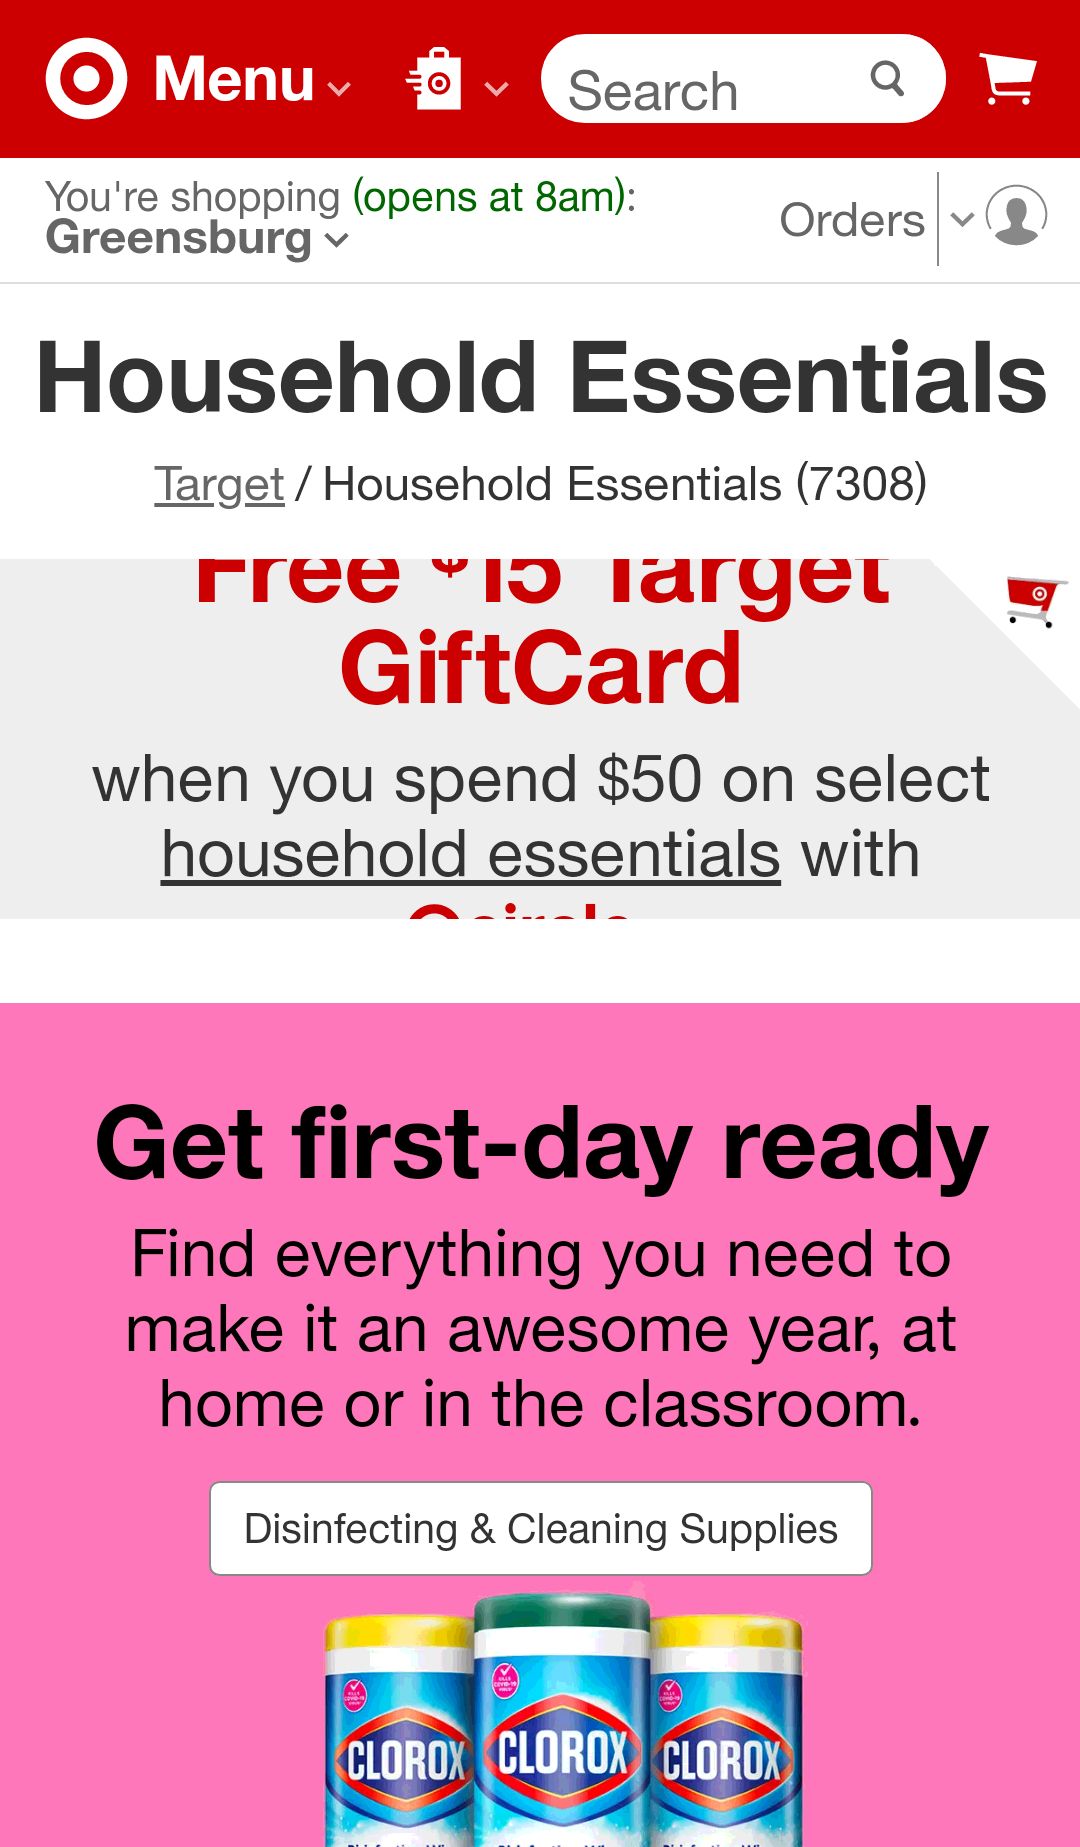 购买 50 美元的家庭必需品即可获得 15 美元的 Target 礼品卡